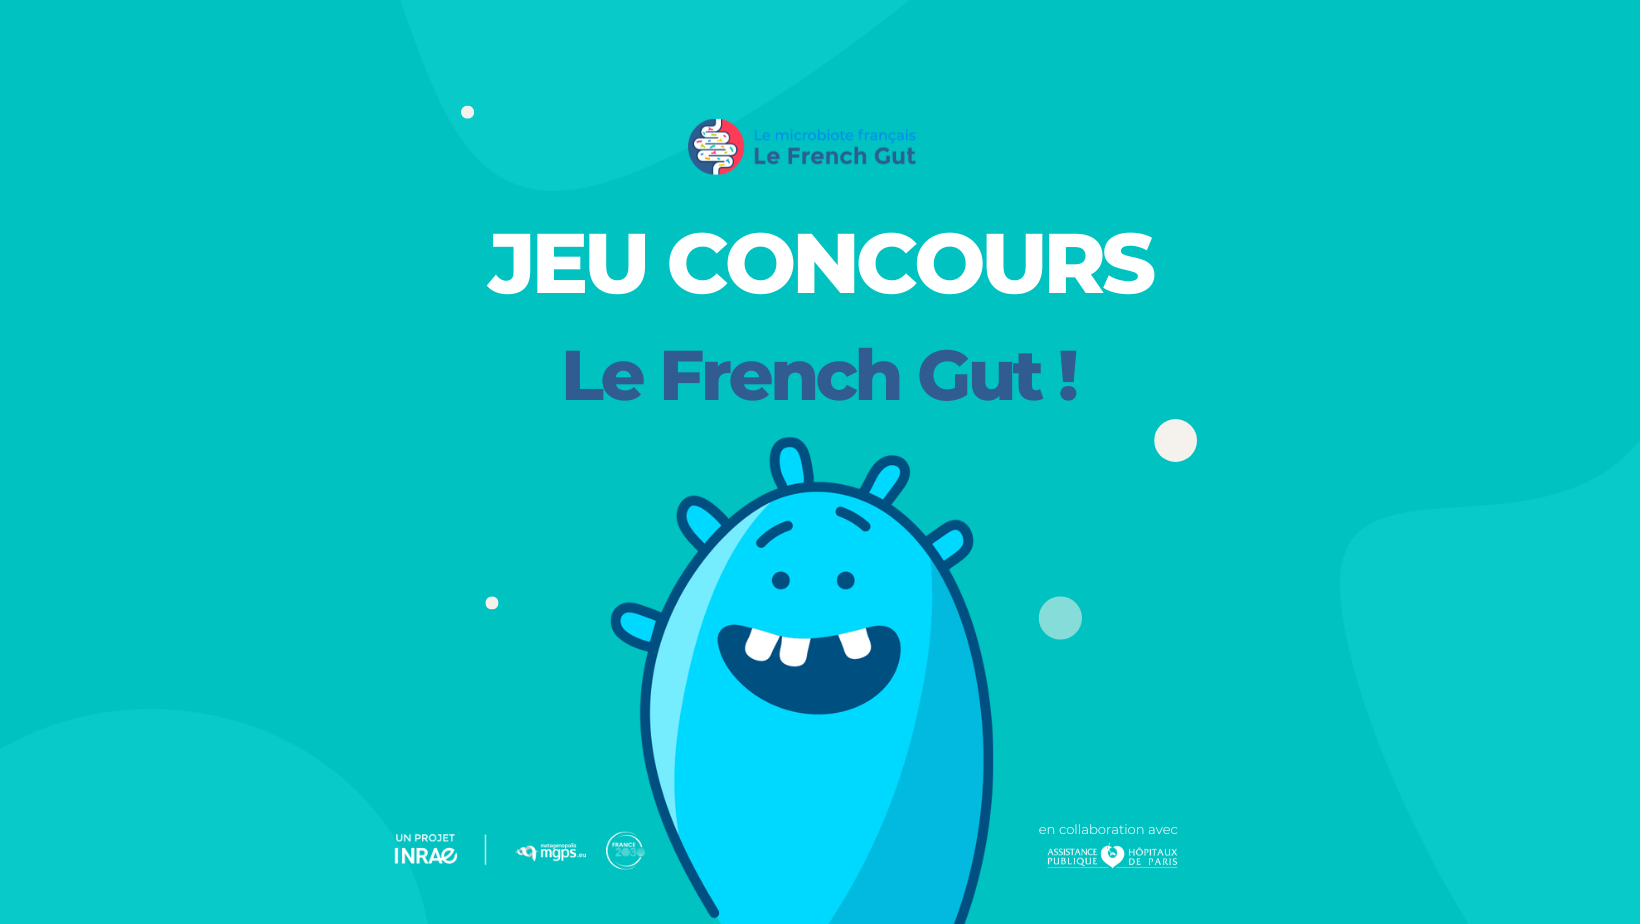 Le French Gut lance son jeu concours sur les réseaux sociaux!